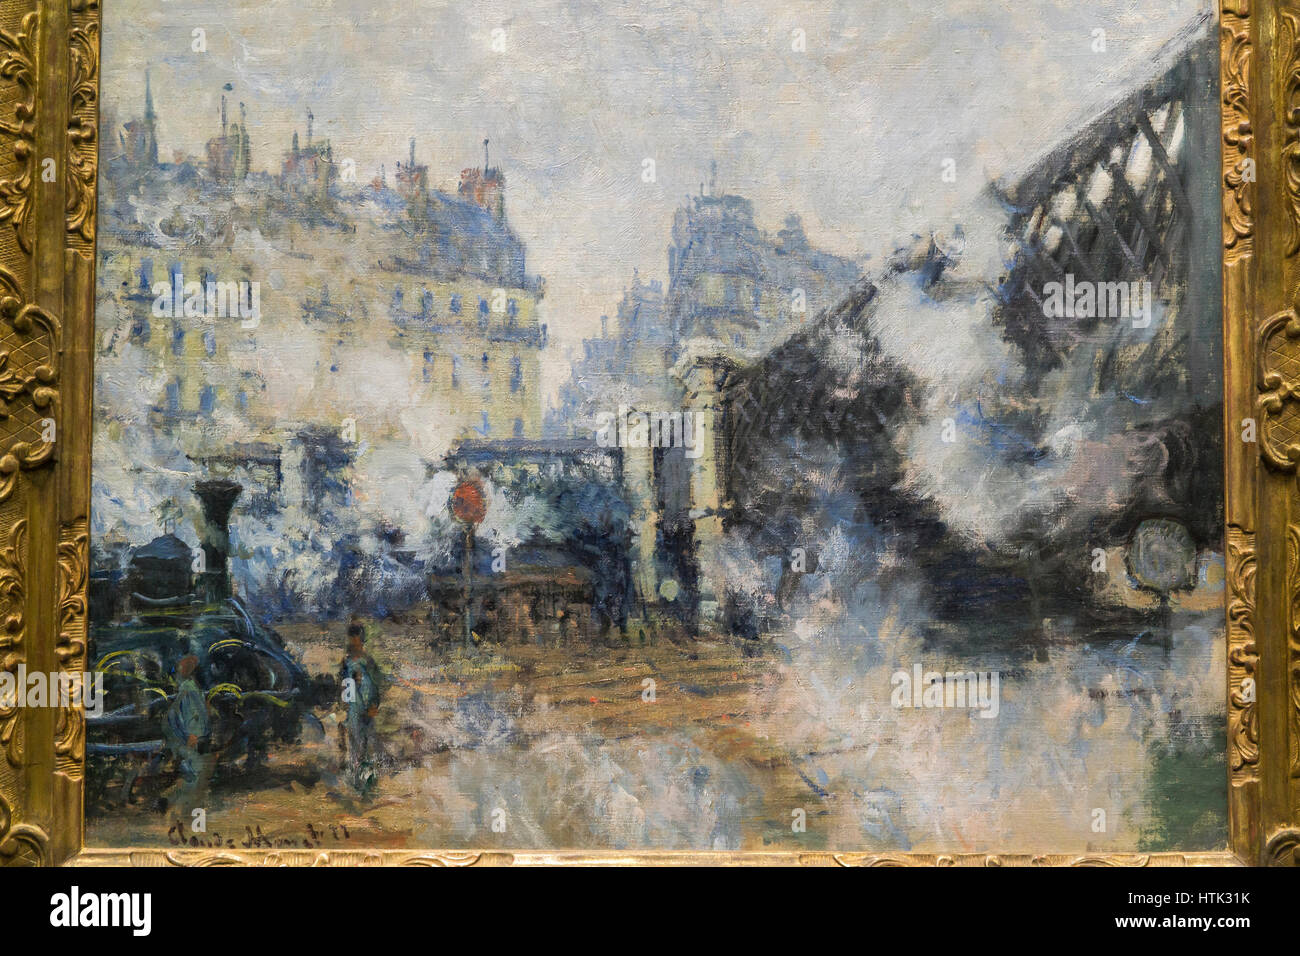 La peinture impressionniste au Musee d'Orsay,Claude Monet, Paris, France. Banque D'Images